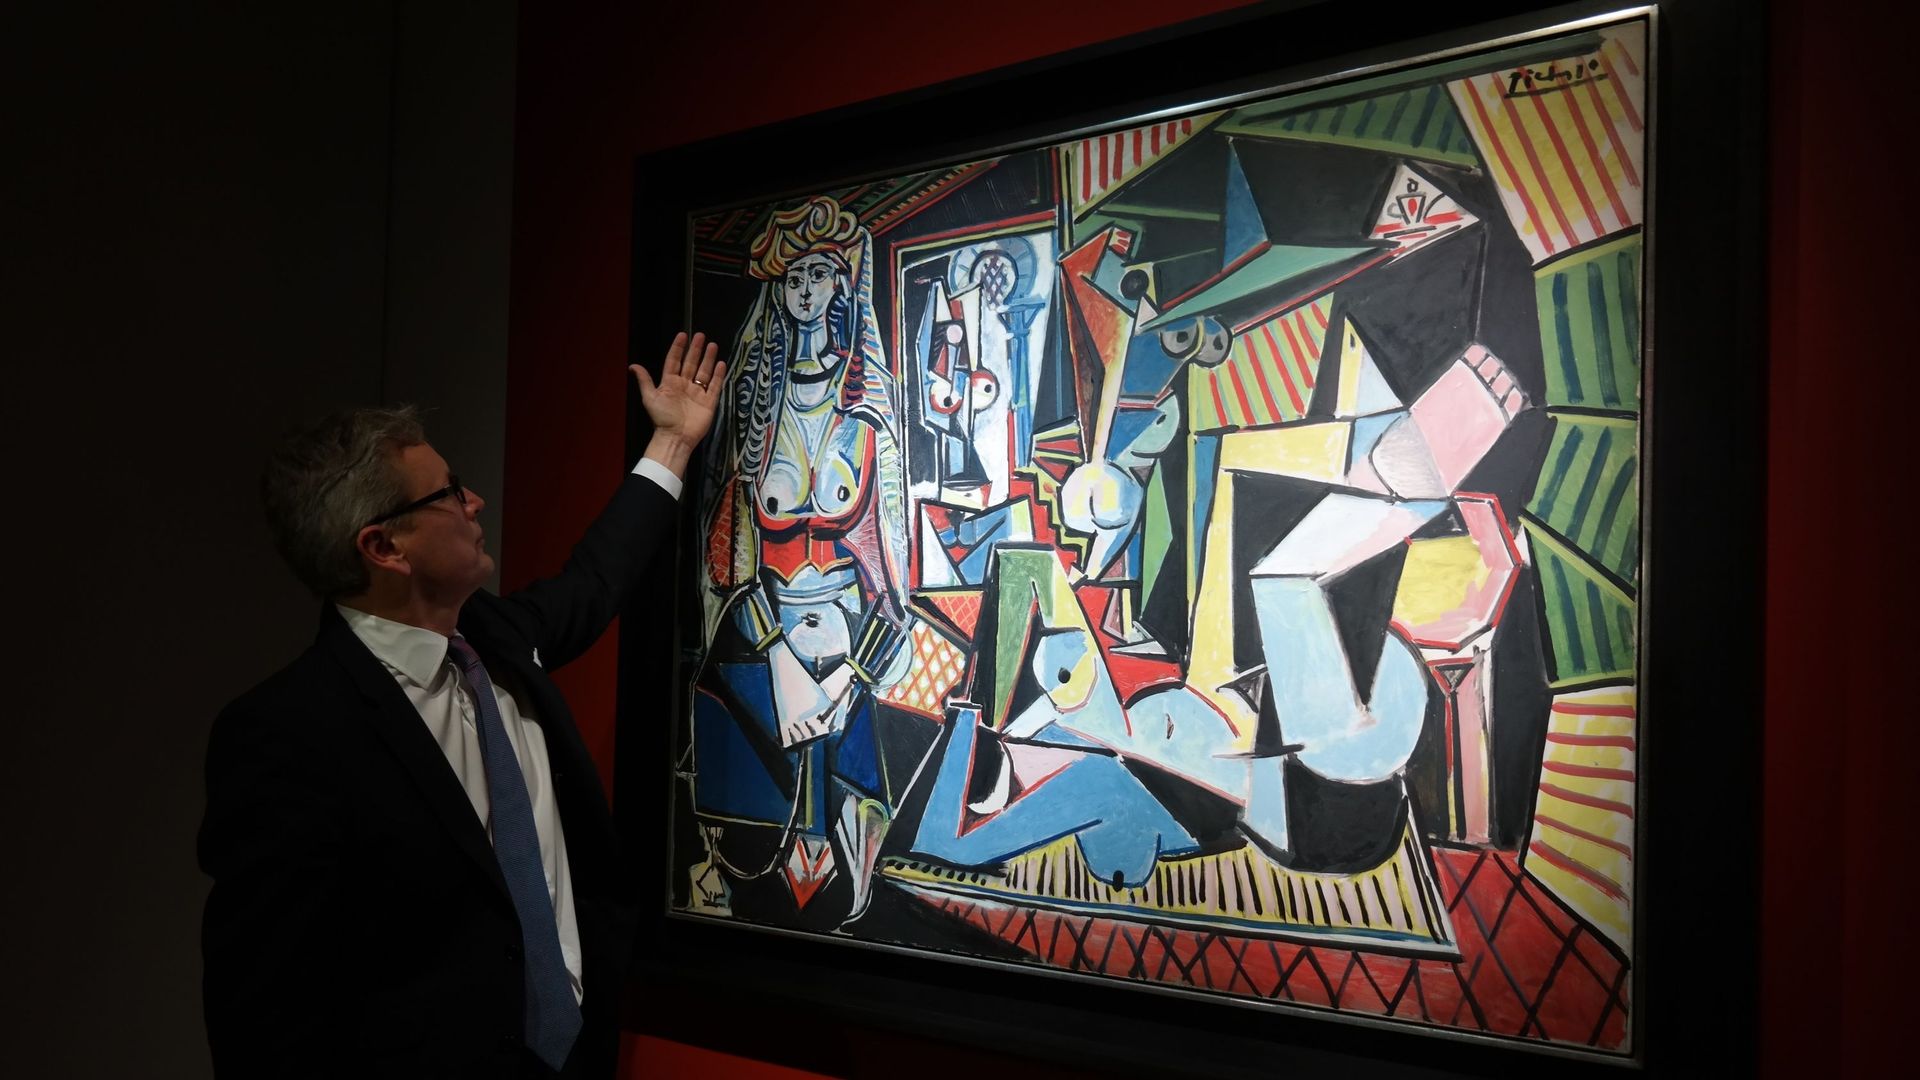 Jussi Pylkkanen, président de Christies, se tient près du tableau de Picasso "Femmes d’Alger (Version O)", le tableau le plus cher du monde après avoir atteint 179,4 millions de dollars à la maison de vente aux enchères Christie’s, à New York, aux États-U